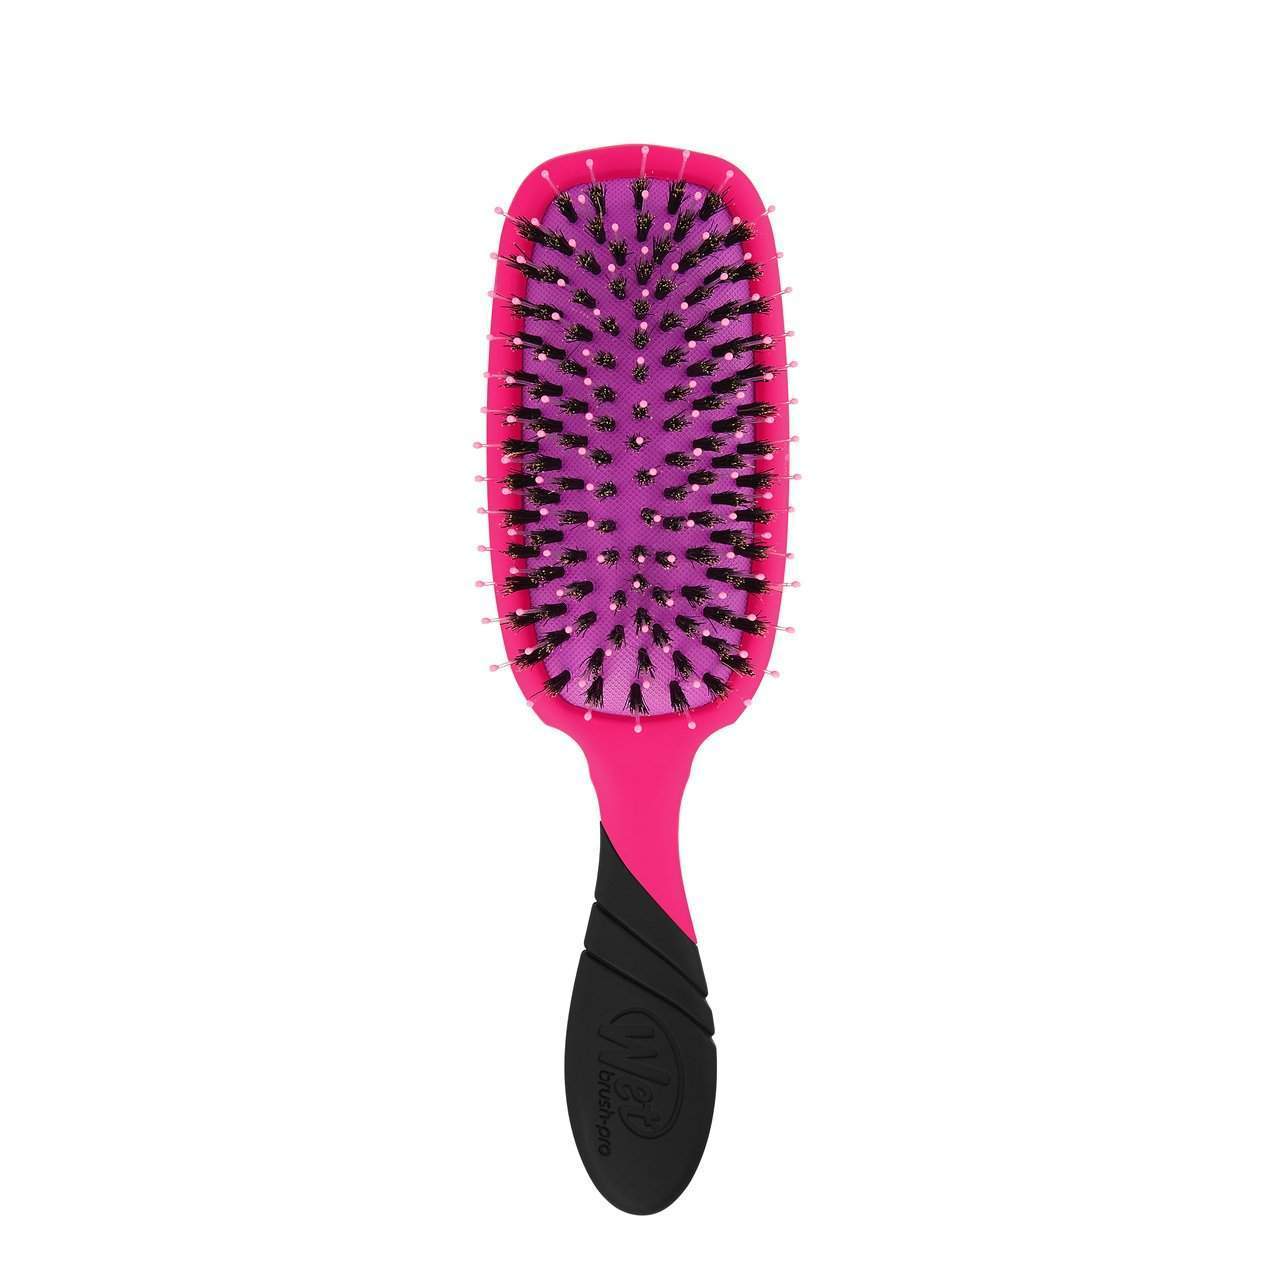 Wet Brush Pro Shine Enhancer Detangler-Wet Brush-Brand_Wet Brush,Collection_Hair,Collection_Tools and Brushes,Tool_Brushes,Tool_Detangling Brush,Tool_Hair Tools